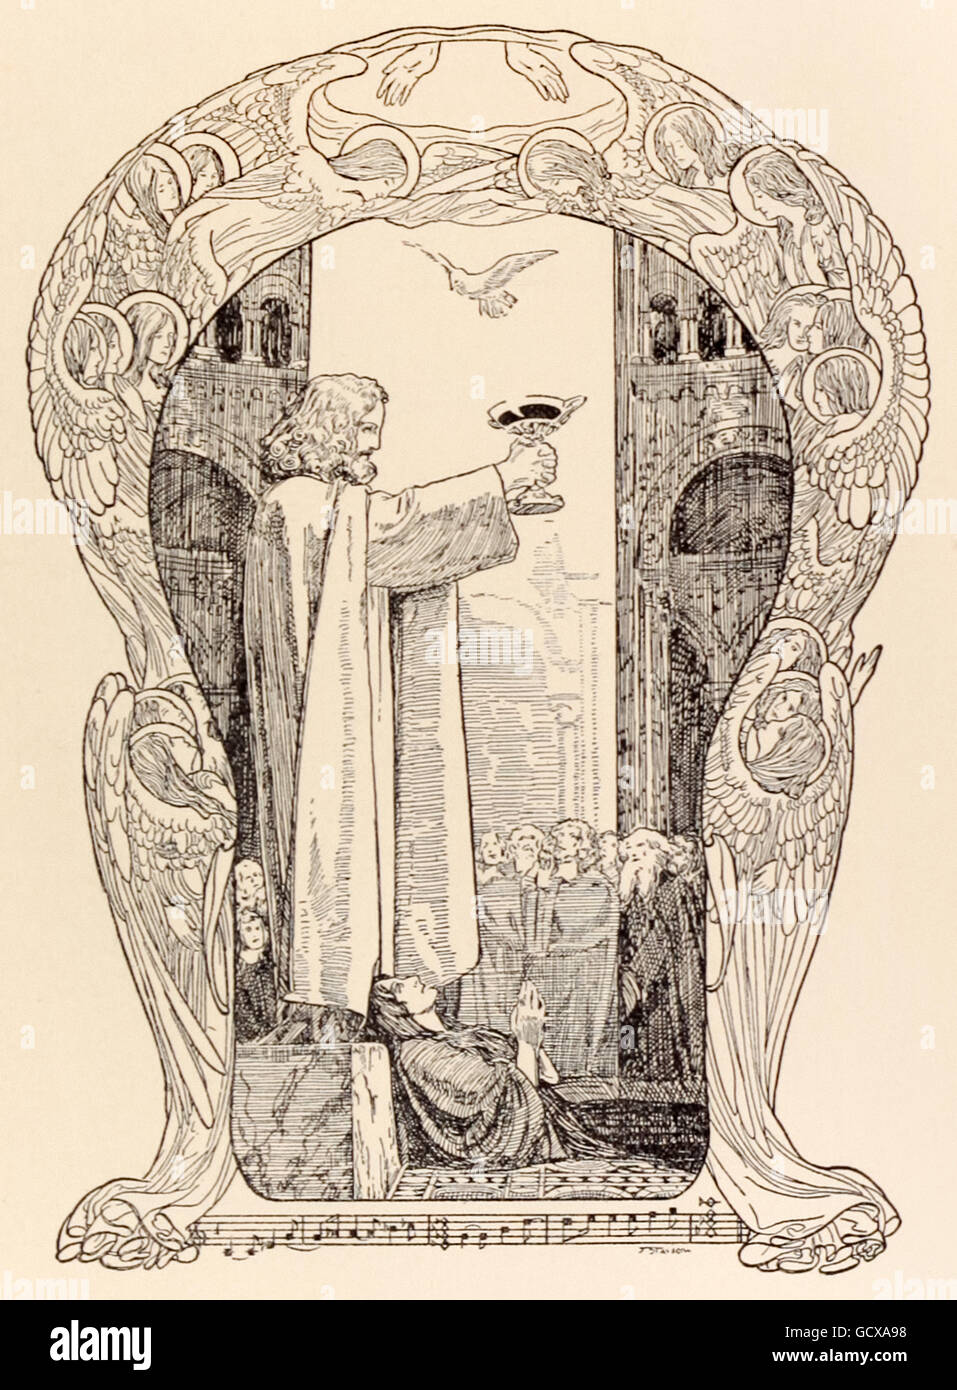 "Parsifal enthüllt den Heiligen Gral." Franz Stassen (1869-1949) Illustration für "Parsifal" von Richard Wagner (1813-1883). Akt 3 - Parsifal-Befehle, die Enthüllung des Grals als alle Knien, Kundry stirbt, wie eine weiße Taube absteigt und schwebt über Parsifal. Siehe Beschreibung für mehr Informationen. Stockfoto